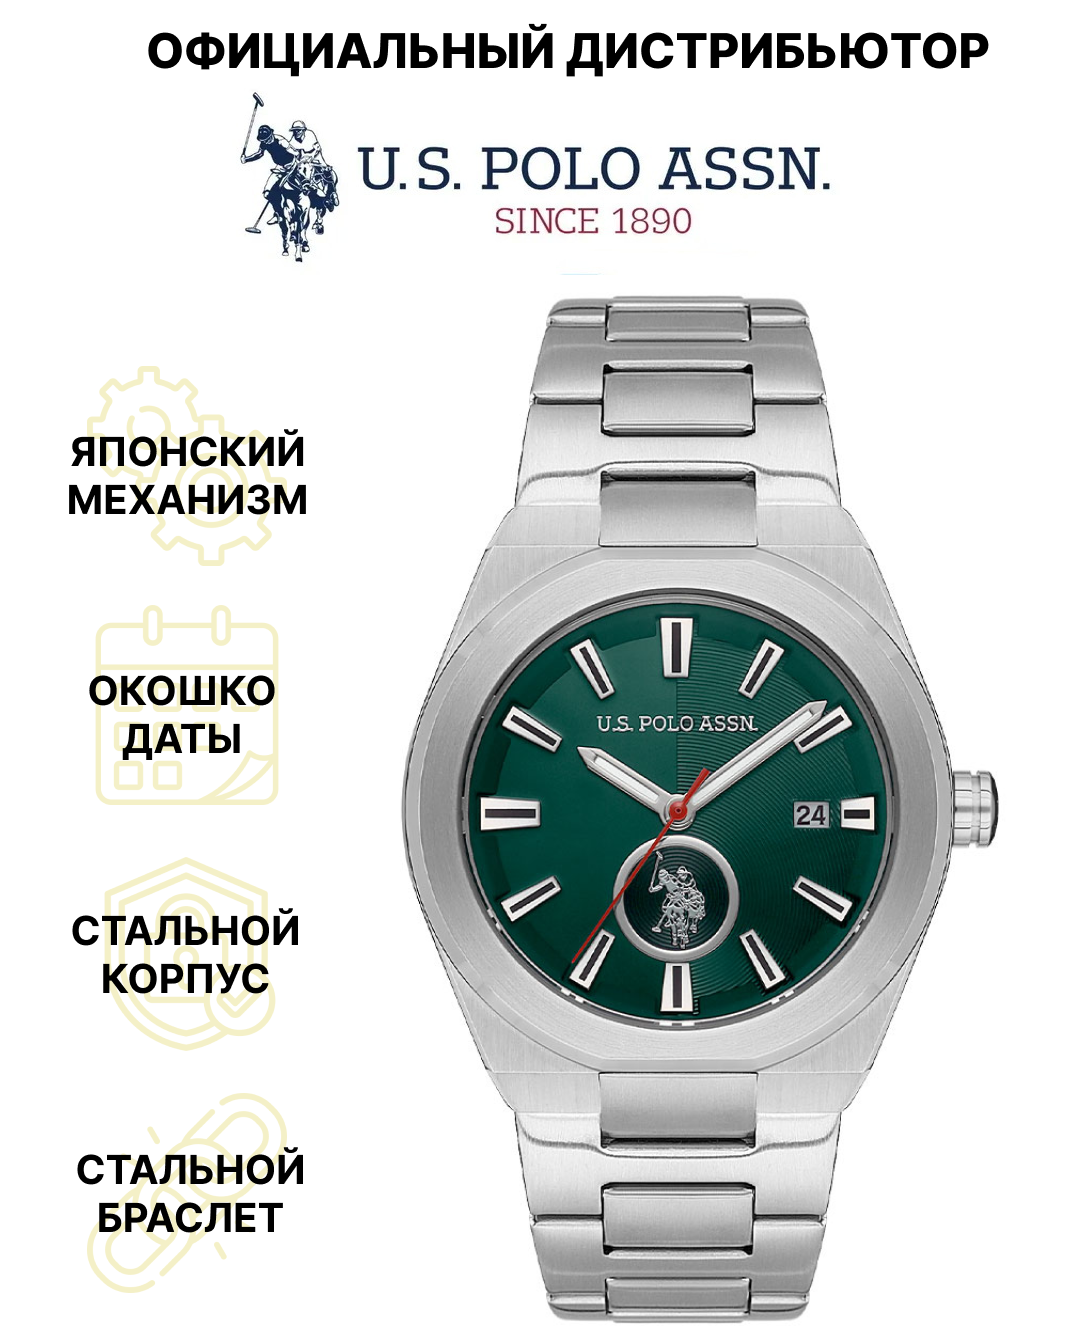 Наручные часы U.S. POLO ASSN.